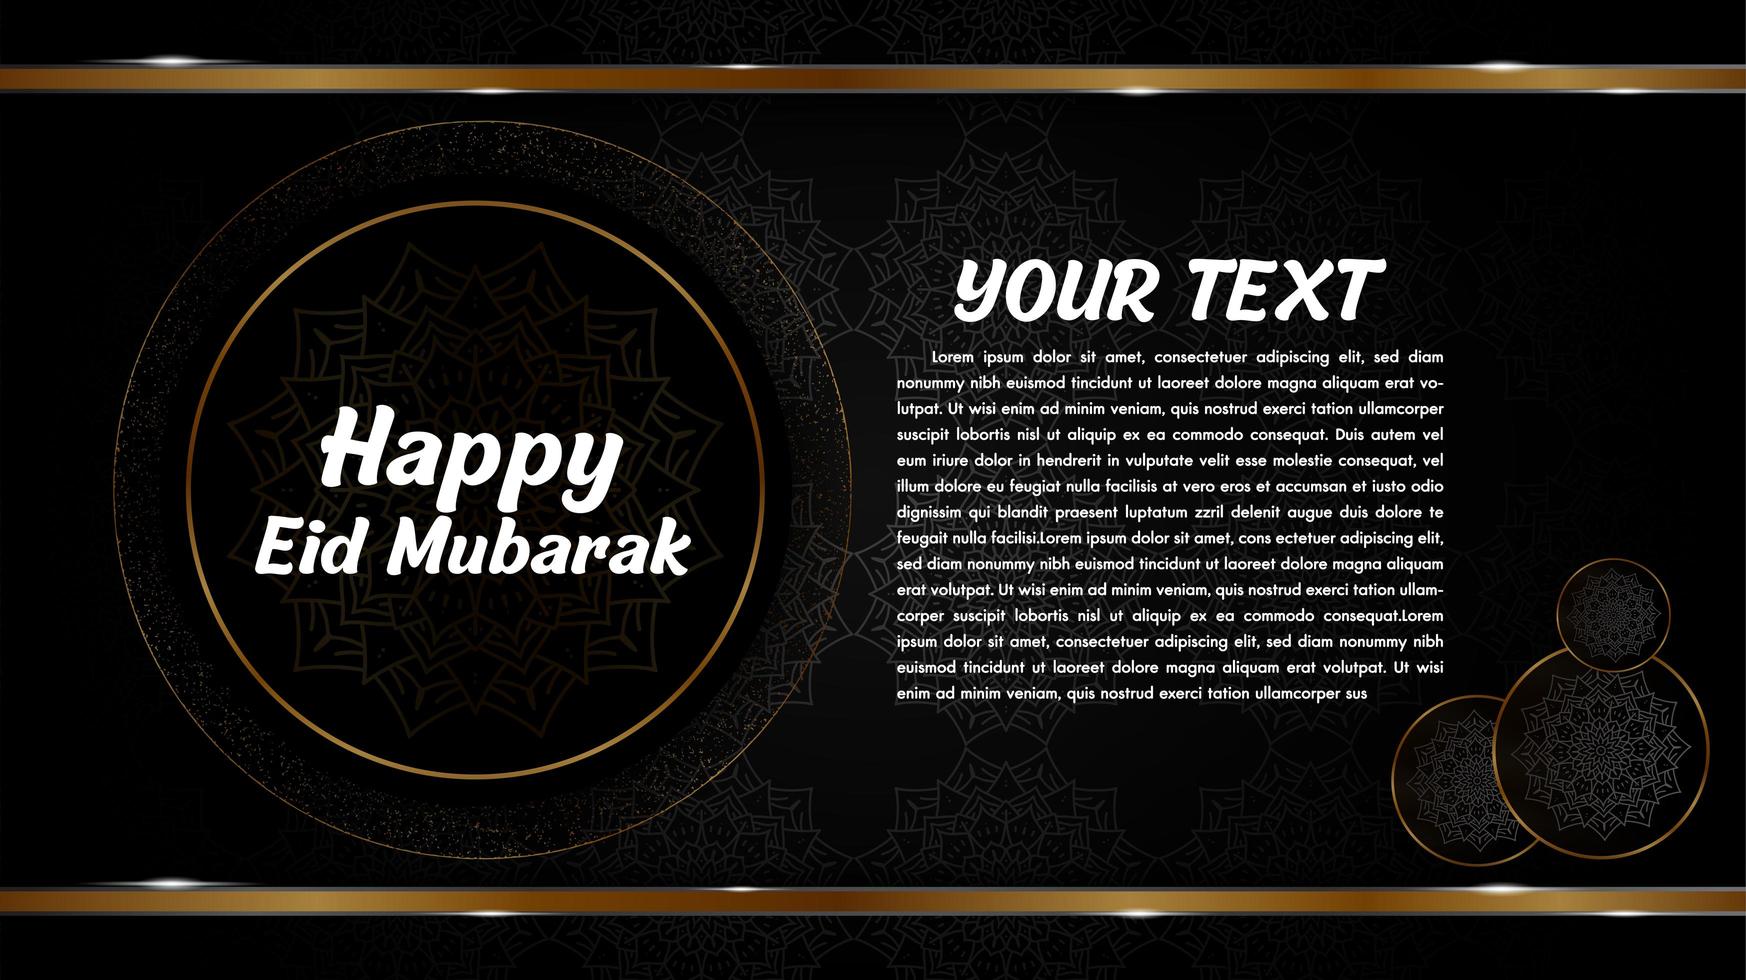 design de eid mubarak com mandalas em círculos dourados vetor